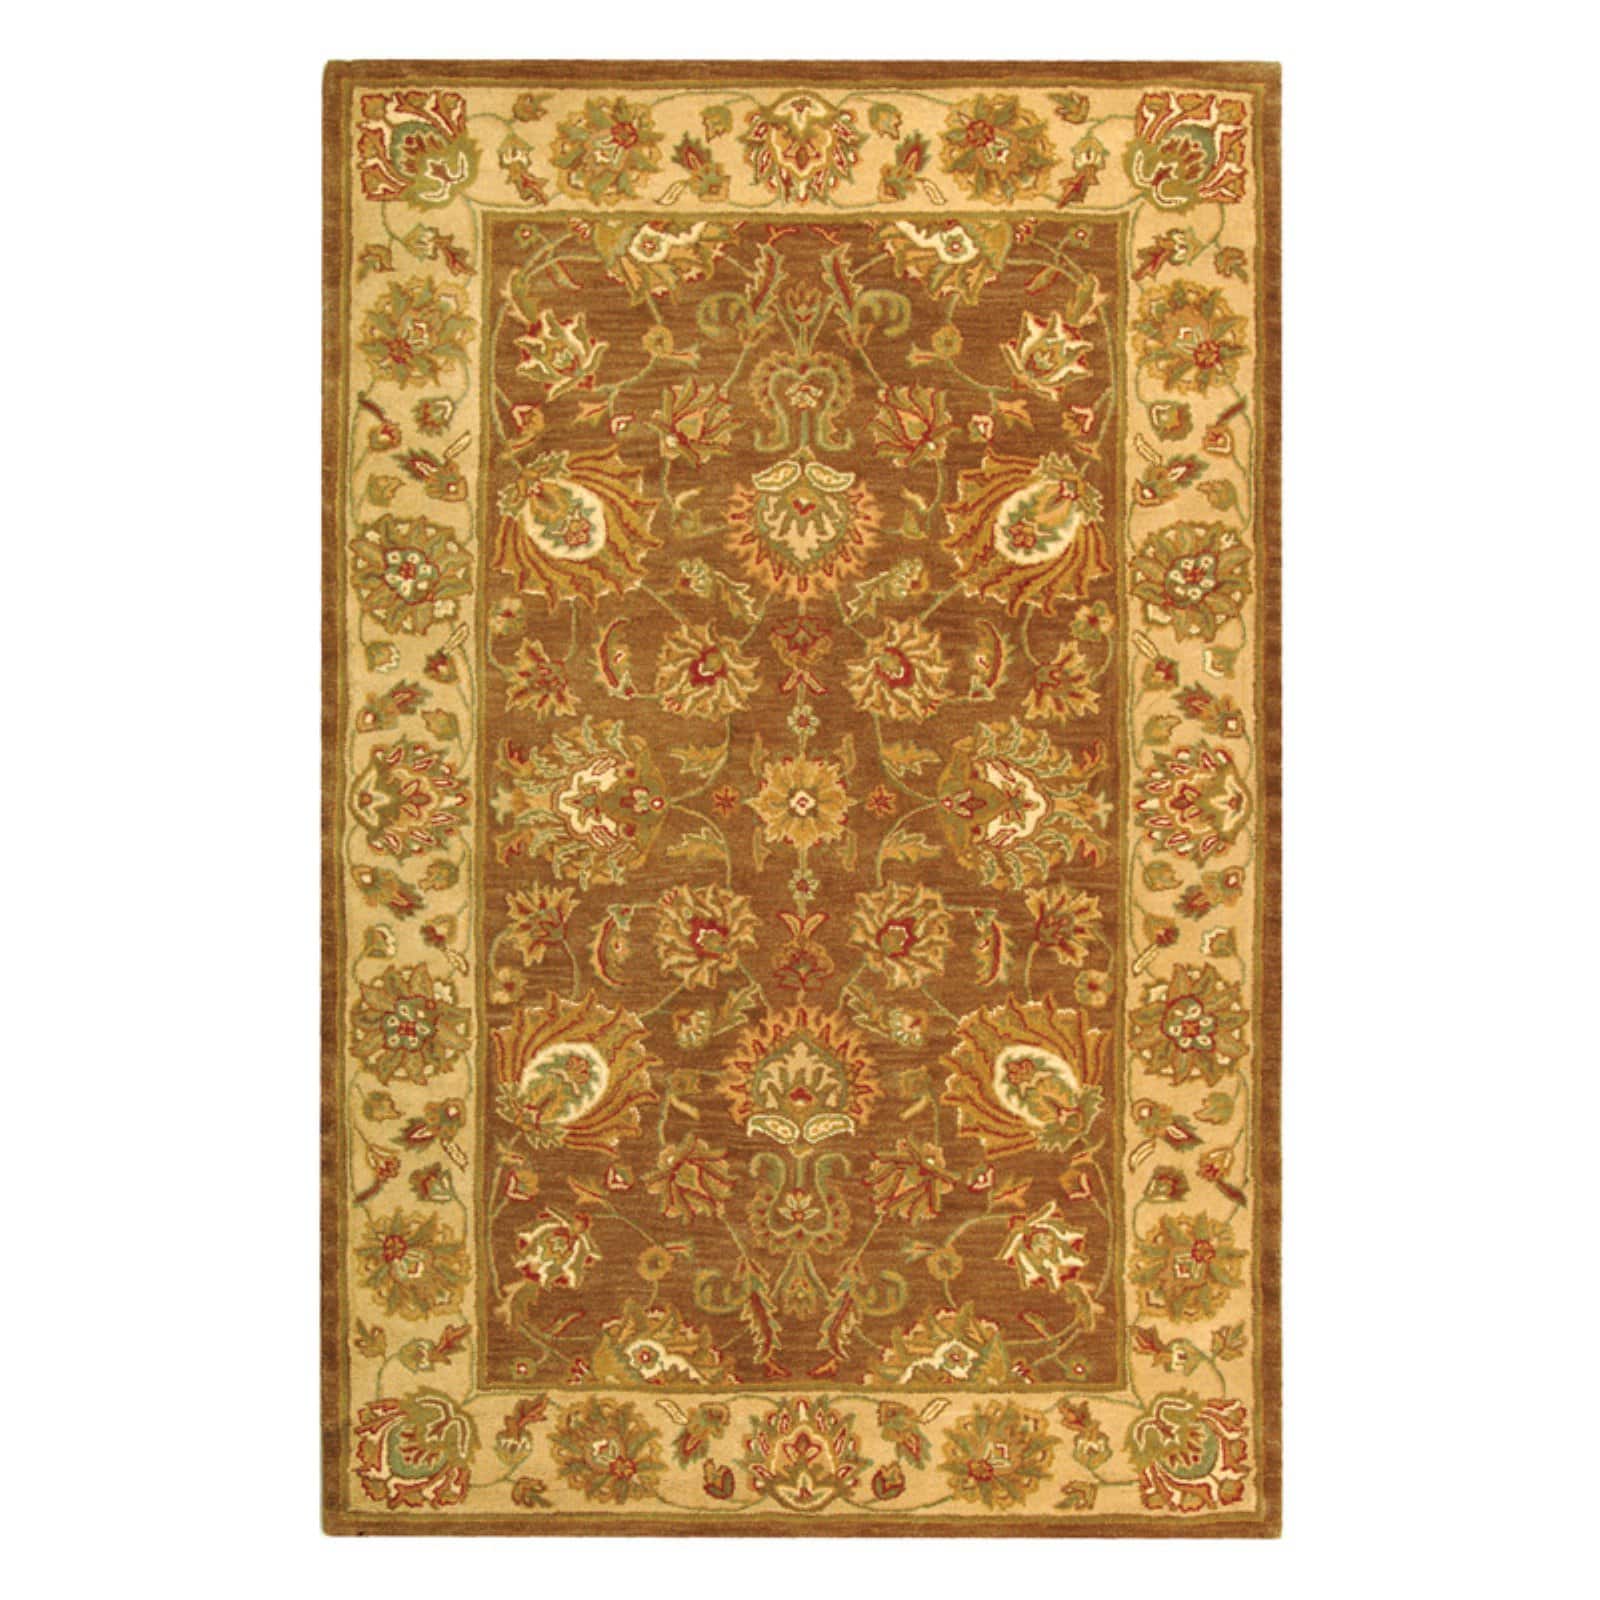 SAFAVIEH Heritage Regis Traditional Wool Runner Rug, Brown/Ivory, 2'3" x 12' - image 4 of 9